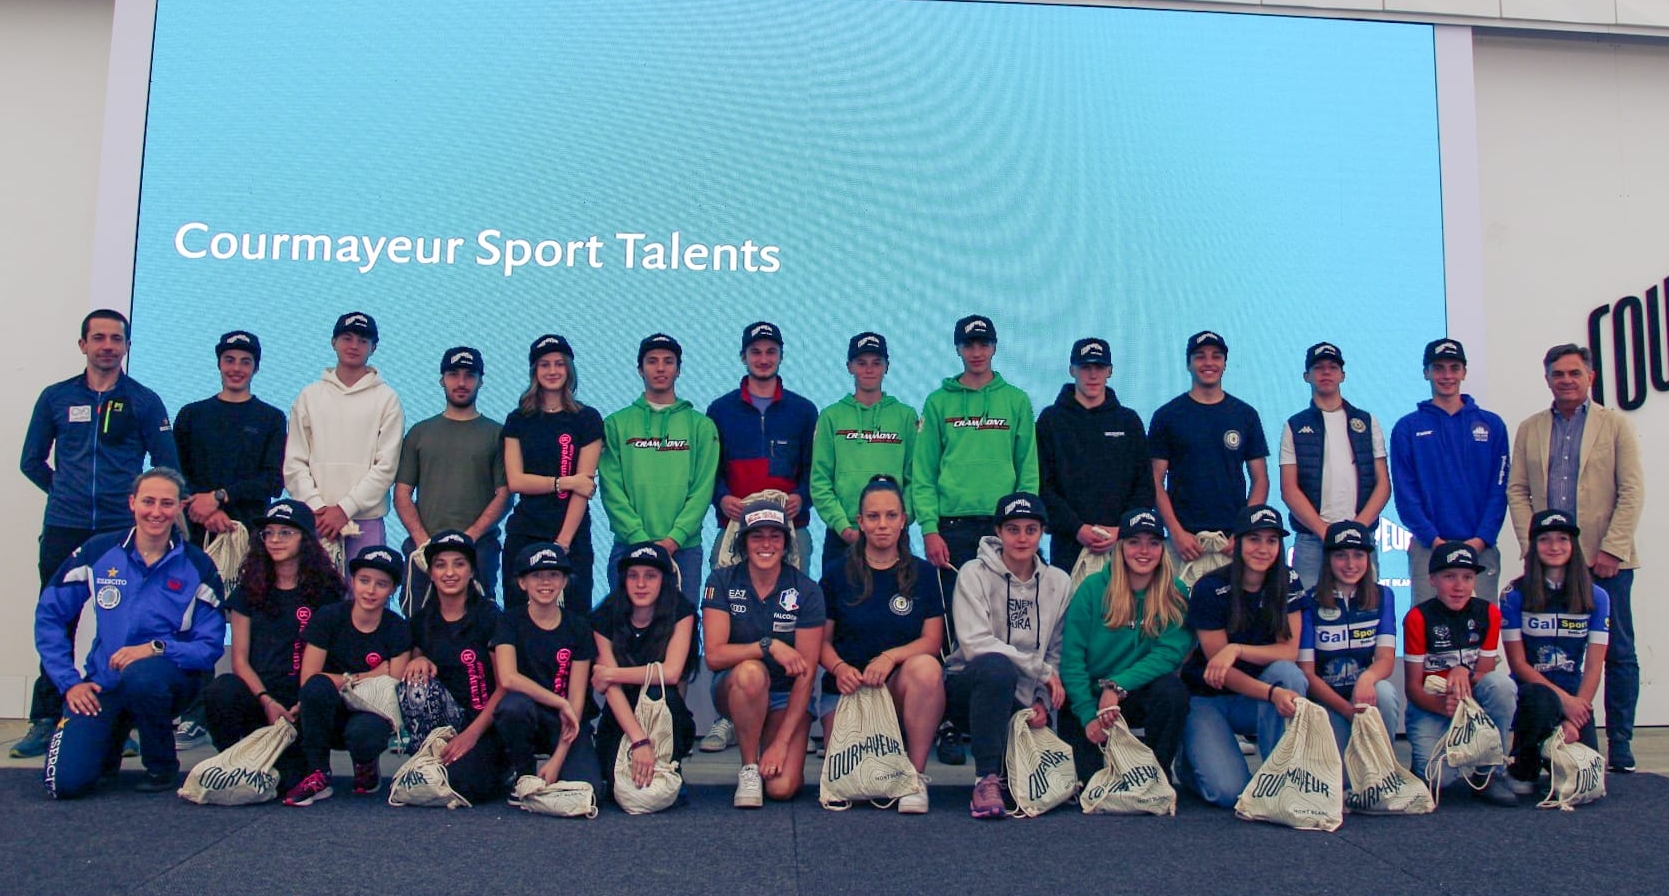 Courmayeur Sport Talents: 30 giovani talenti dello sport nominati Ambassador del Comune, Federica Brignone madrina del progetto